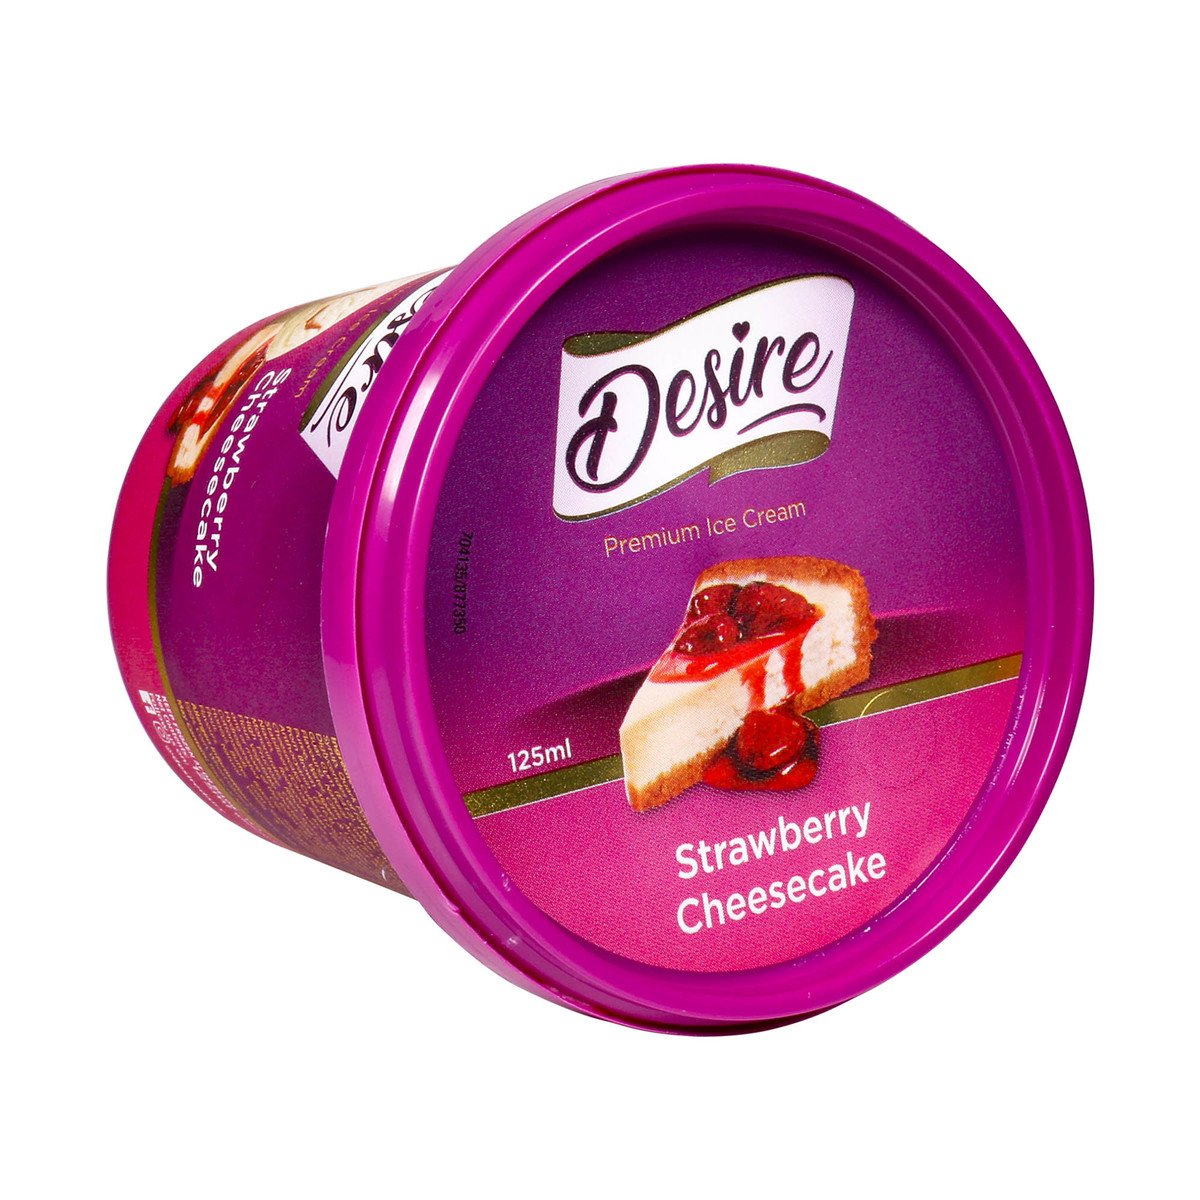 Desire Premium Ice Cream Strawberry Cheese Cake 125ml